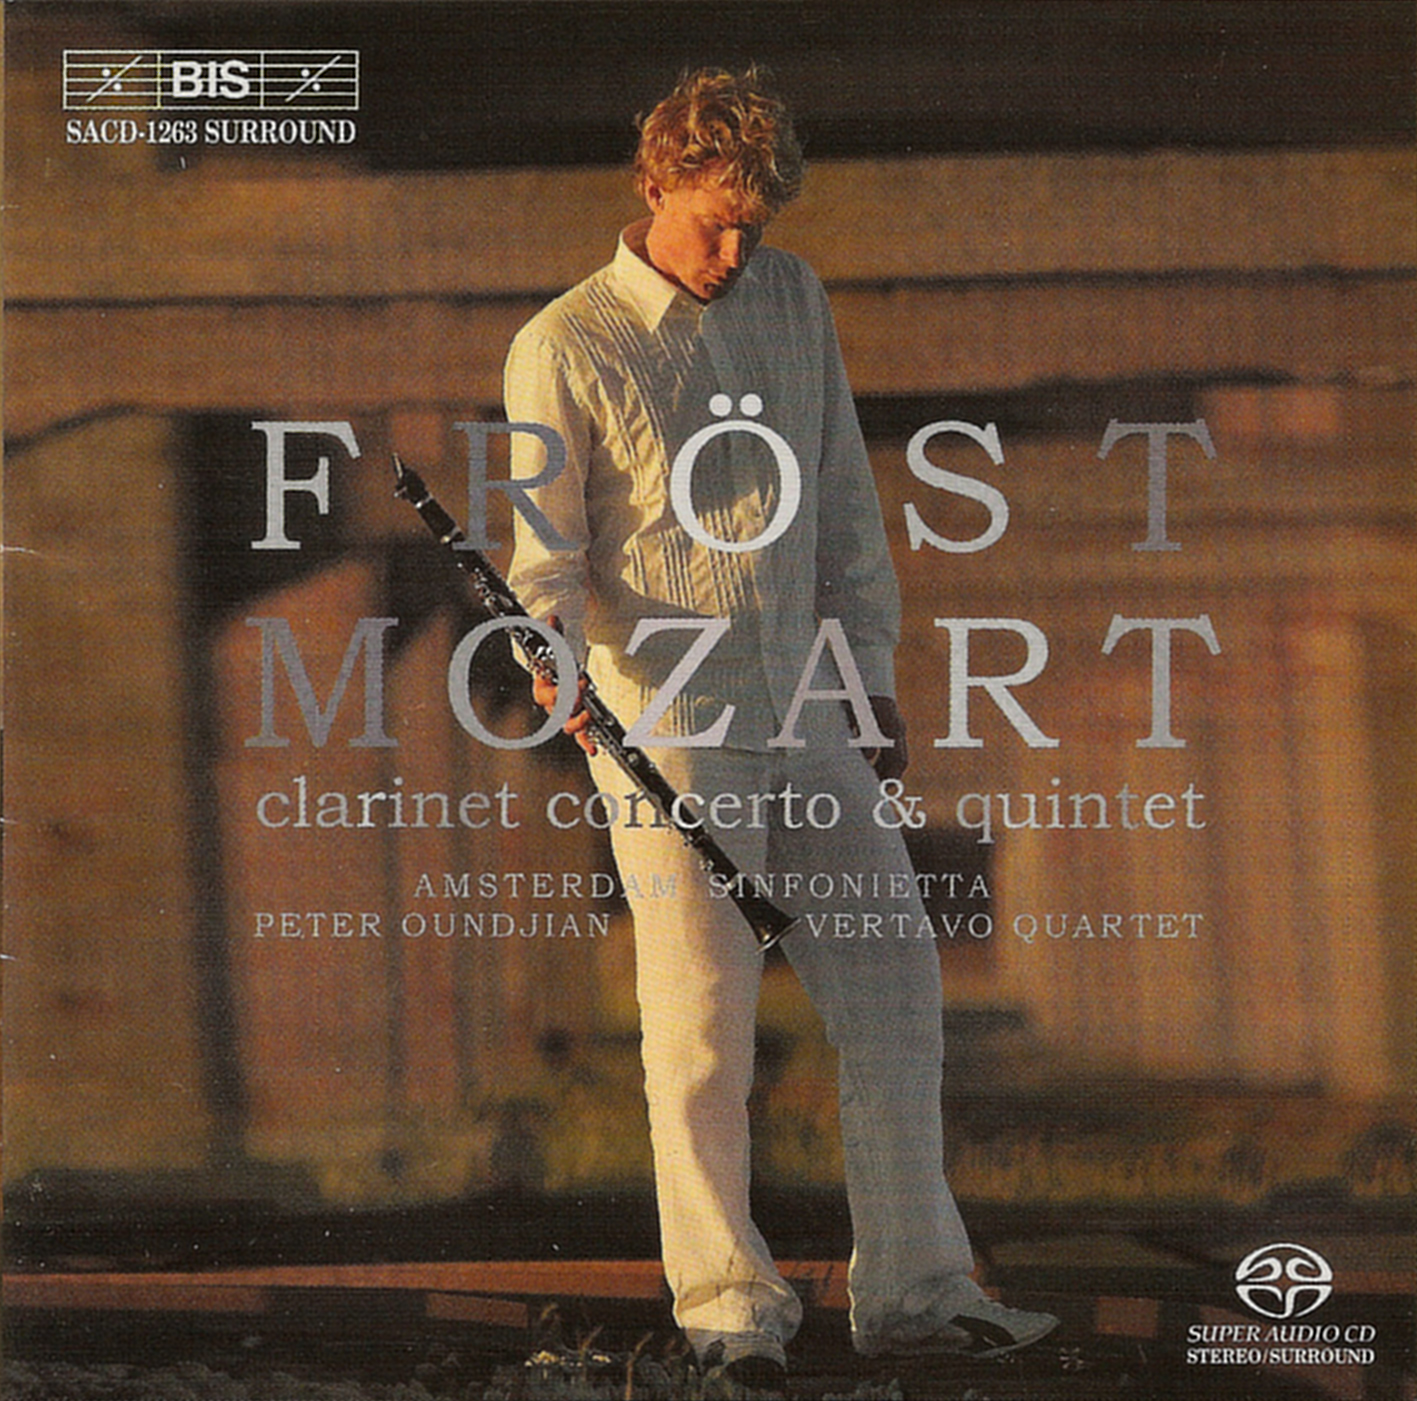 Mozart - Clarinet Concerto and Quintet - Frost, Amsterdam Sinfonietta 24-44.1